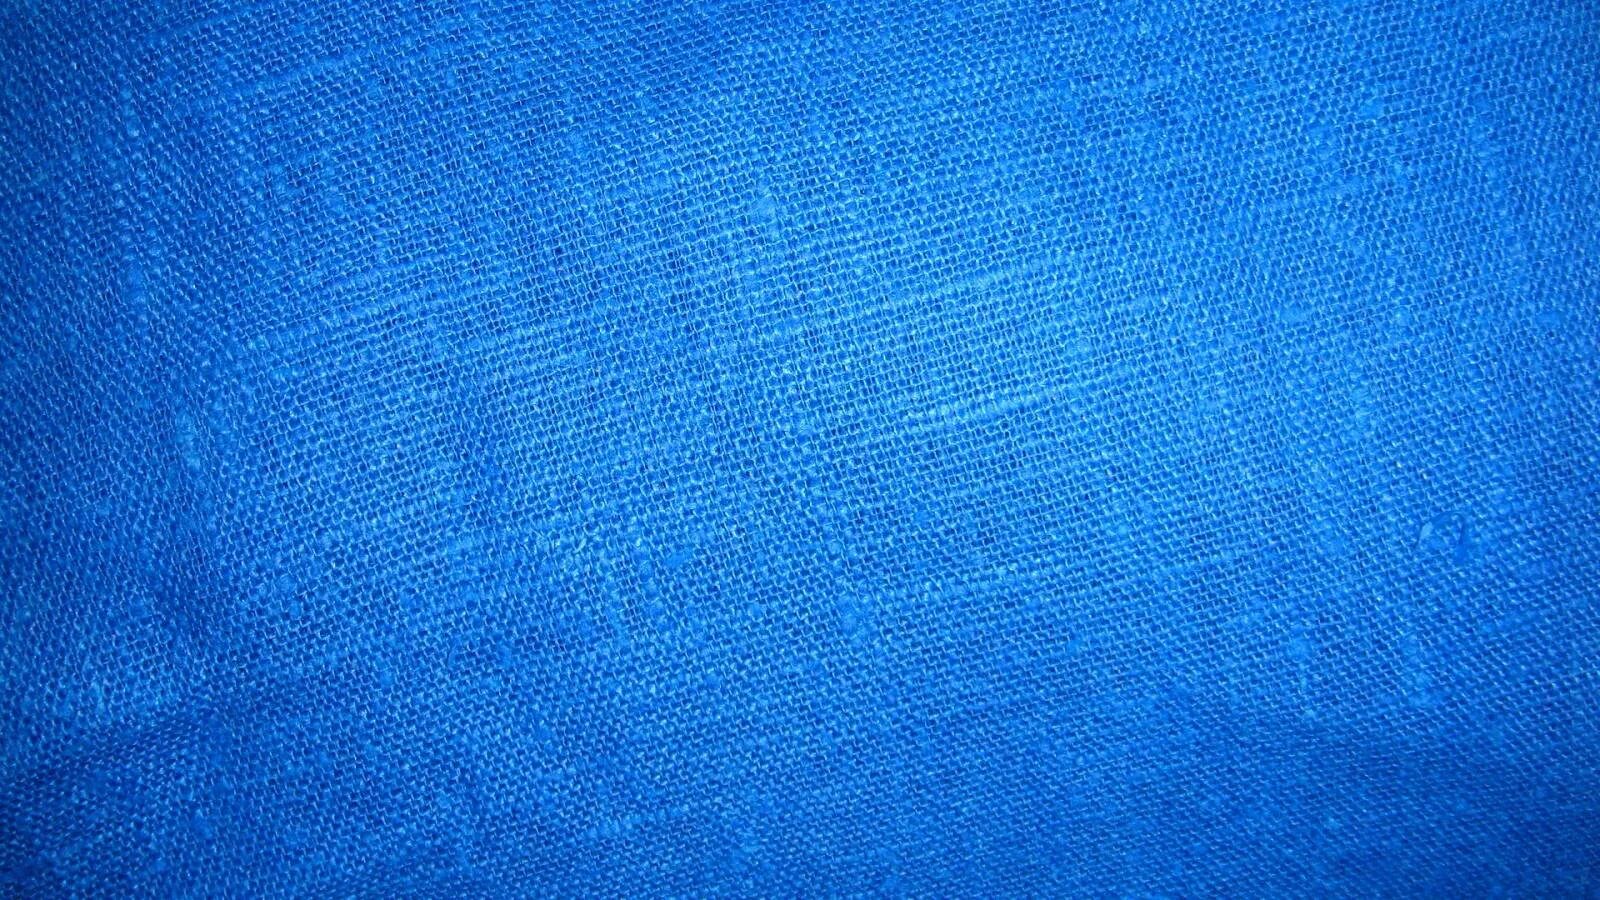 Ткань снизу. Текстура ткани. Синяя ткань. Фон ткань. Джинсовая ткань голубая.